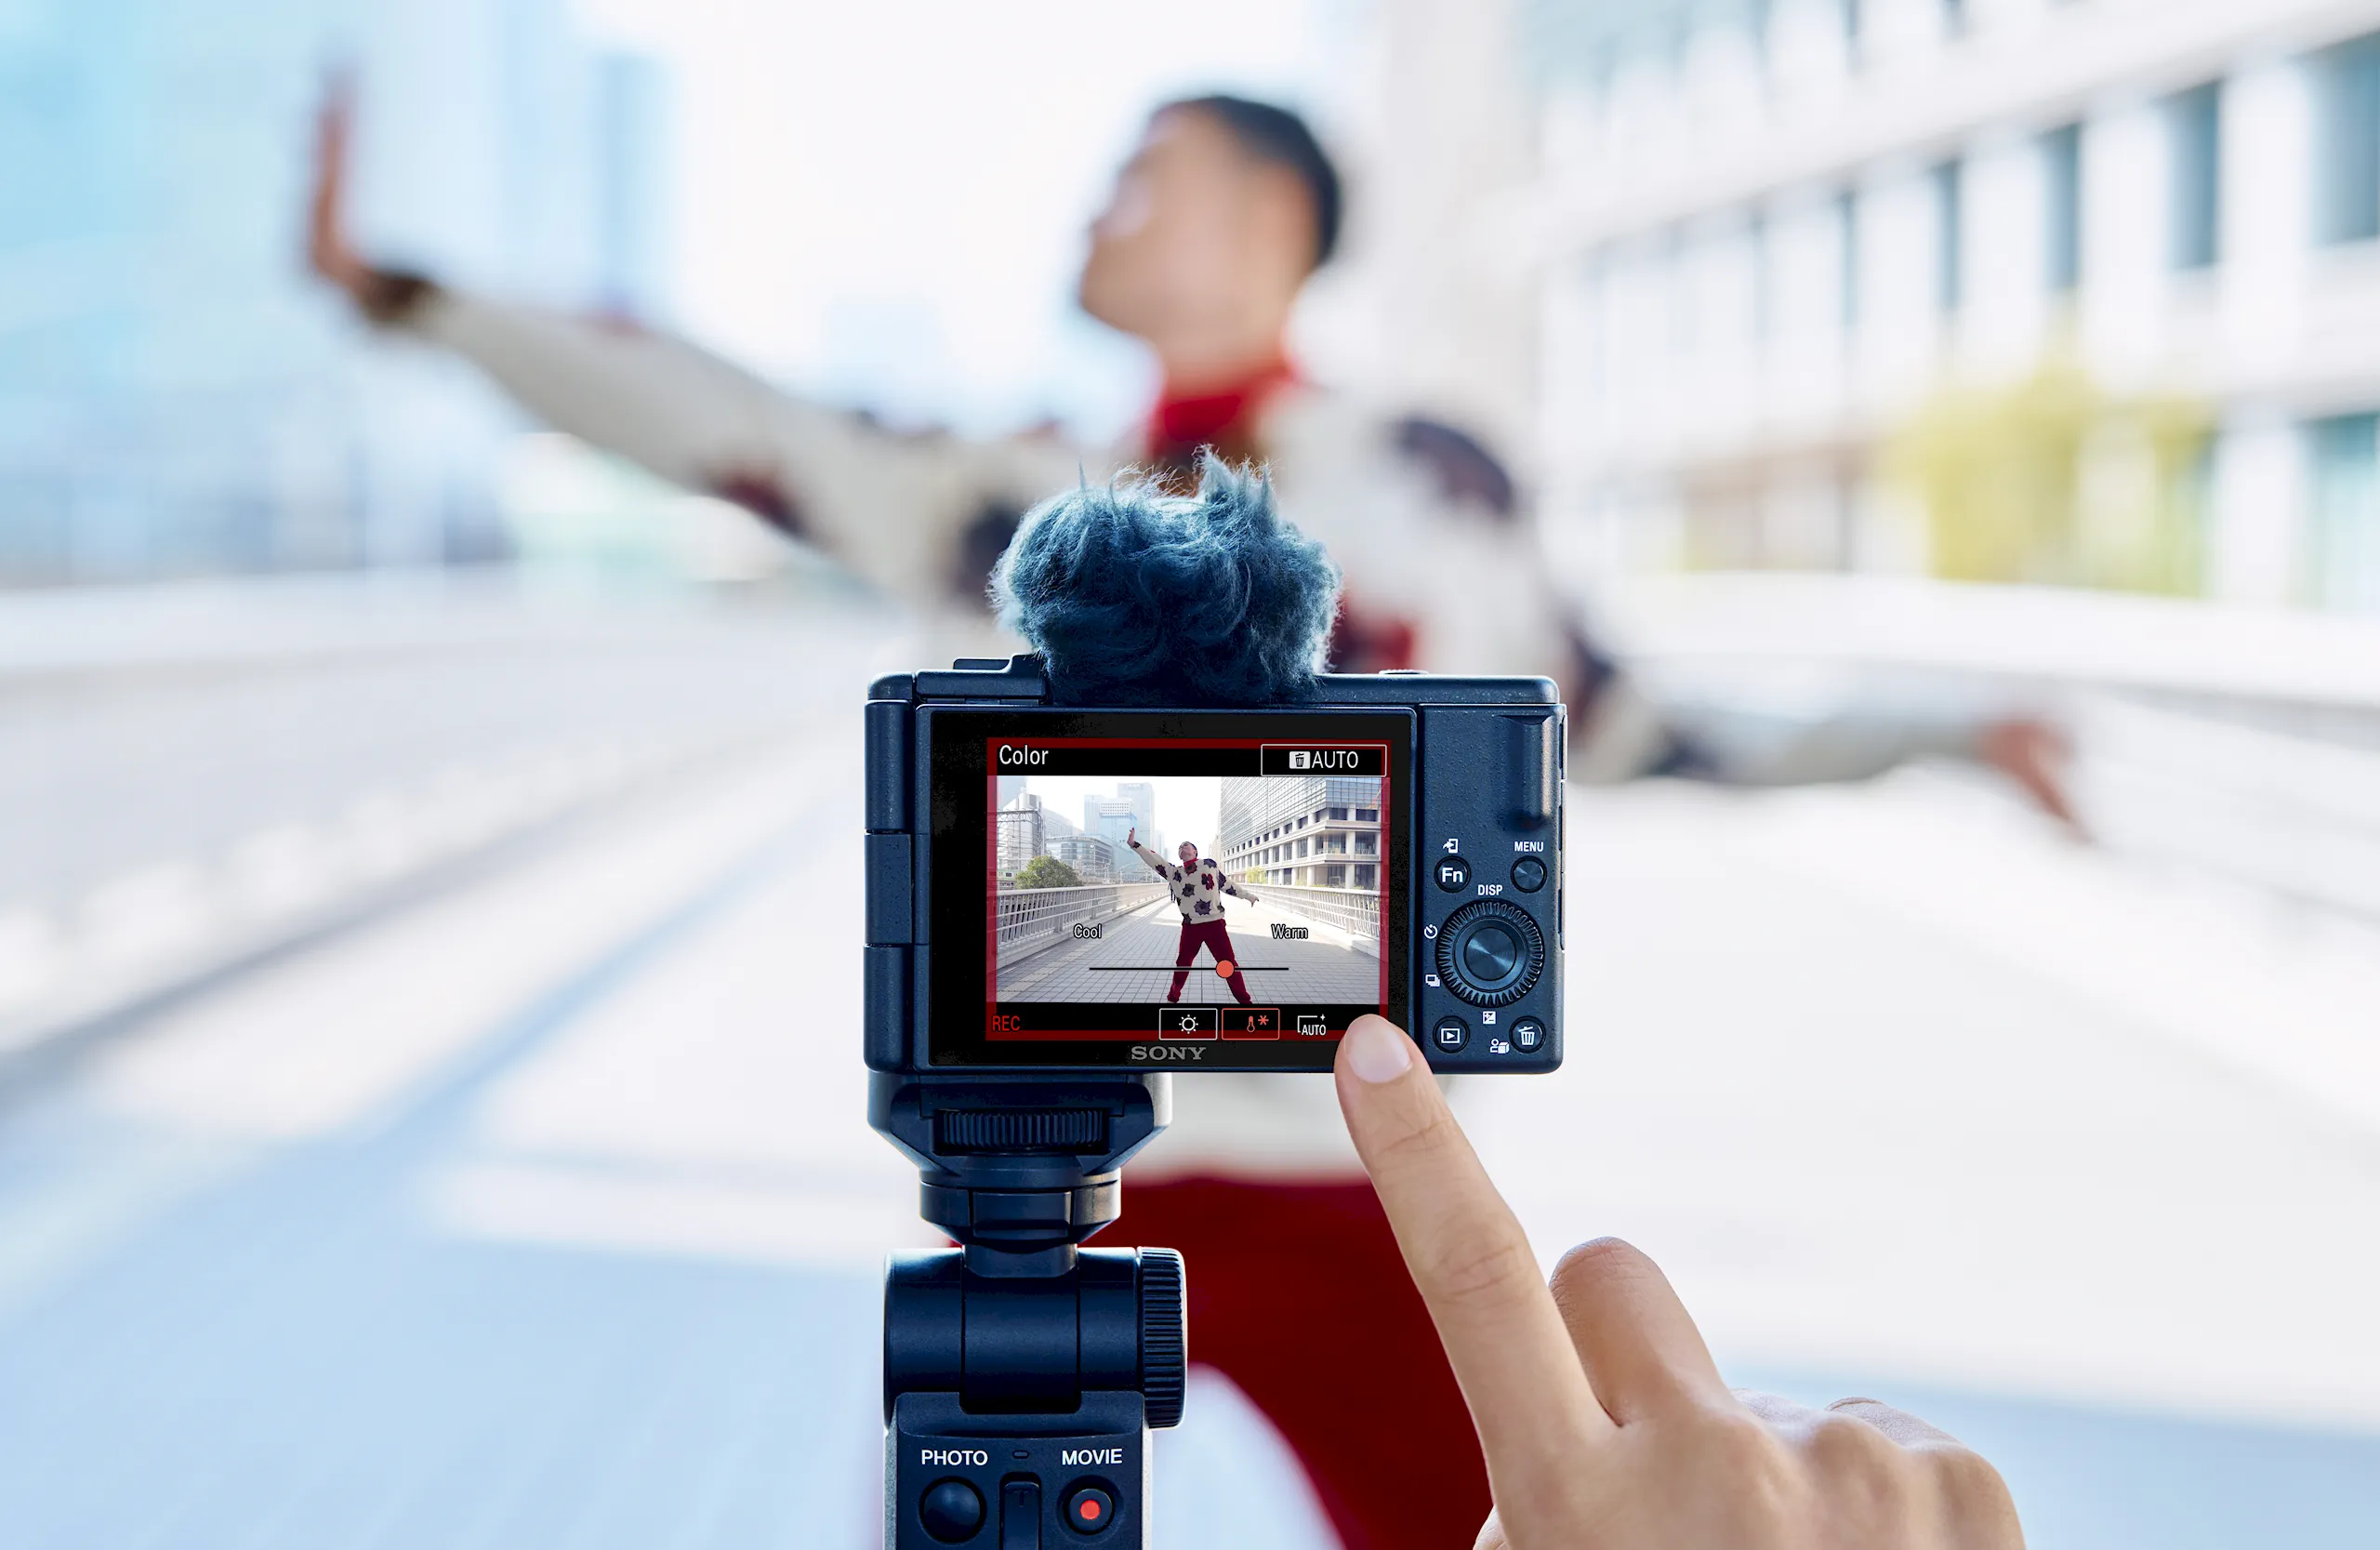 Sony ra mắt máy ảnh vlog Sony ZV-1 II với tiêu cự 18-50mm F1.8-4 mới, giá 22,990,000 VND